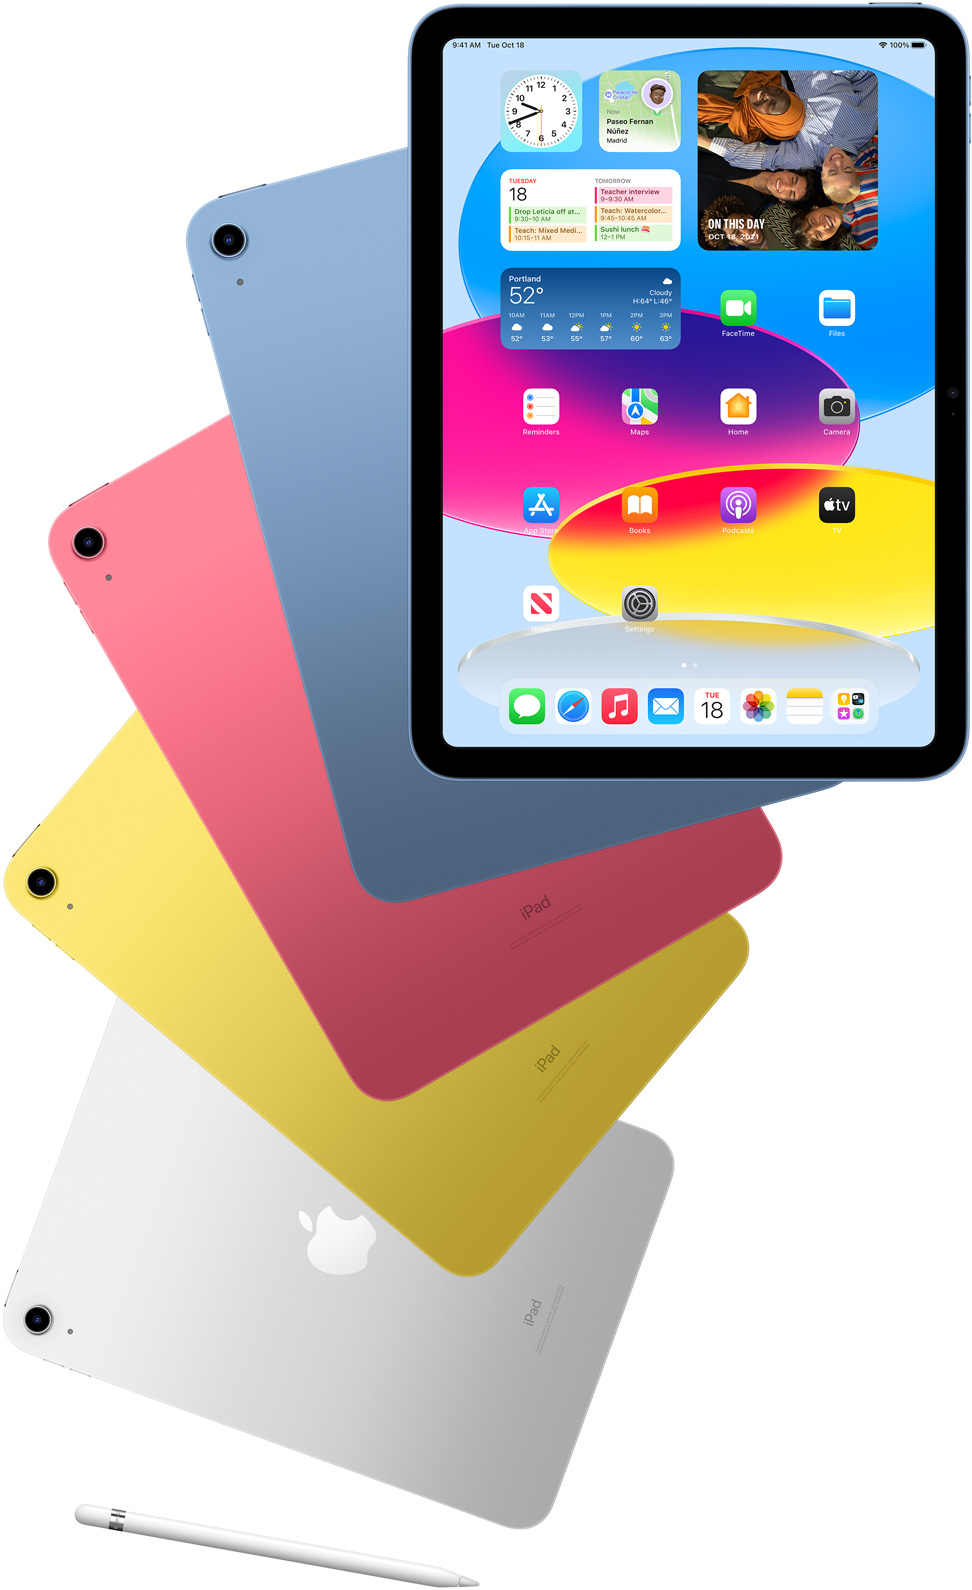 El iPad de vista frontal muestra la pantalla de inicio con iPads traseros azules, rosados, amarillos y plateados detrás.  Un Apple Pencil se encuentra cerca de los modelos de iPad dispuestos.